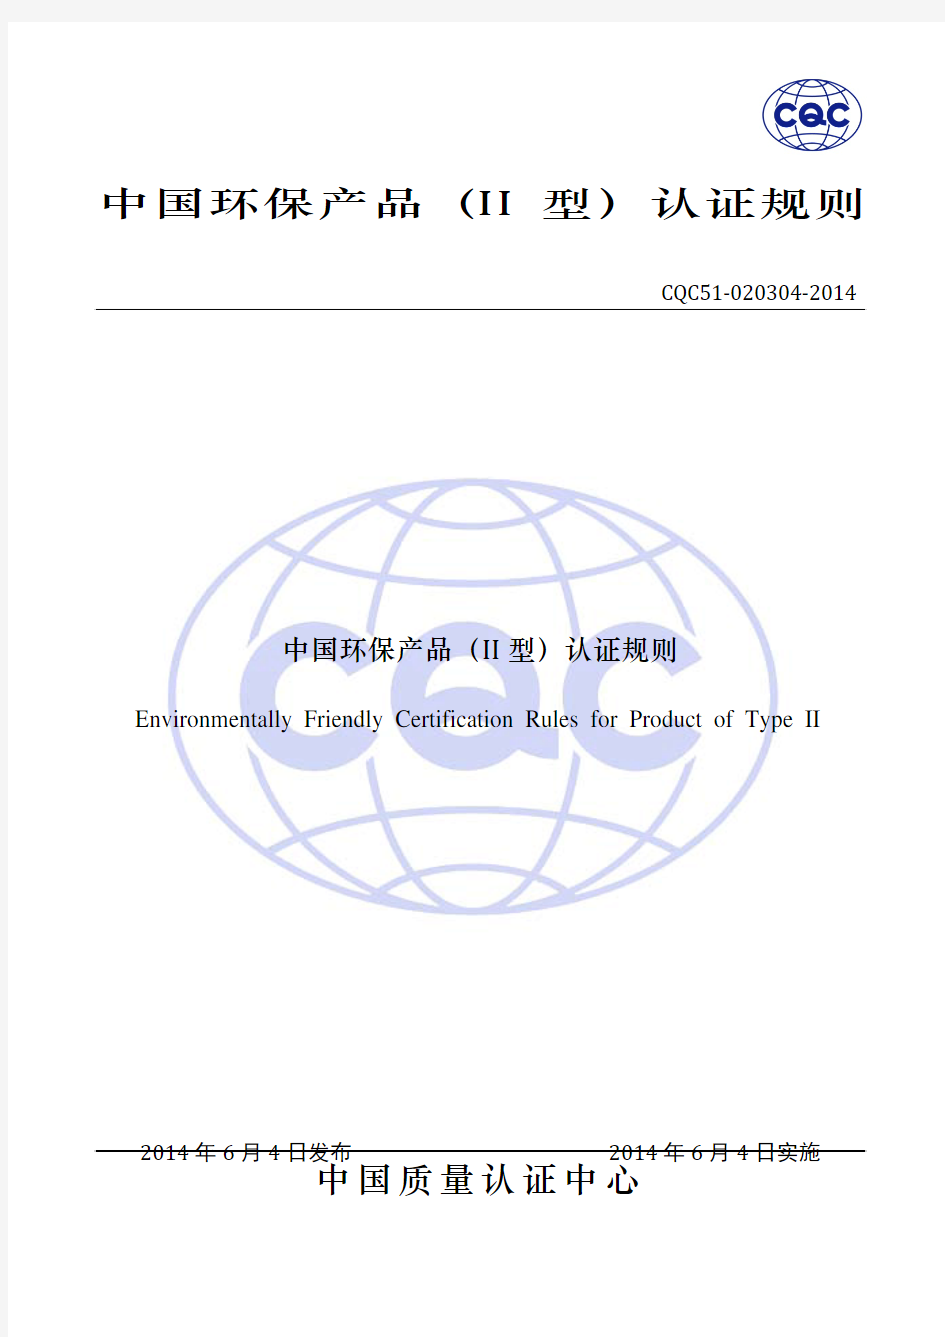 中国环保产品(II型)认证规则